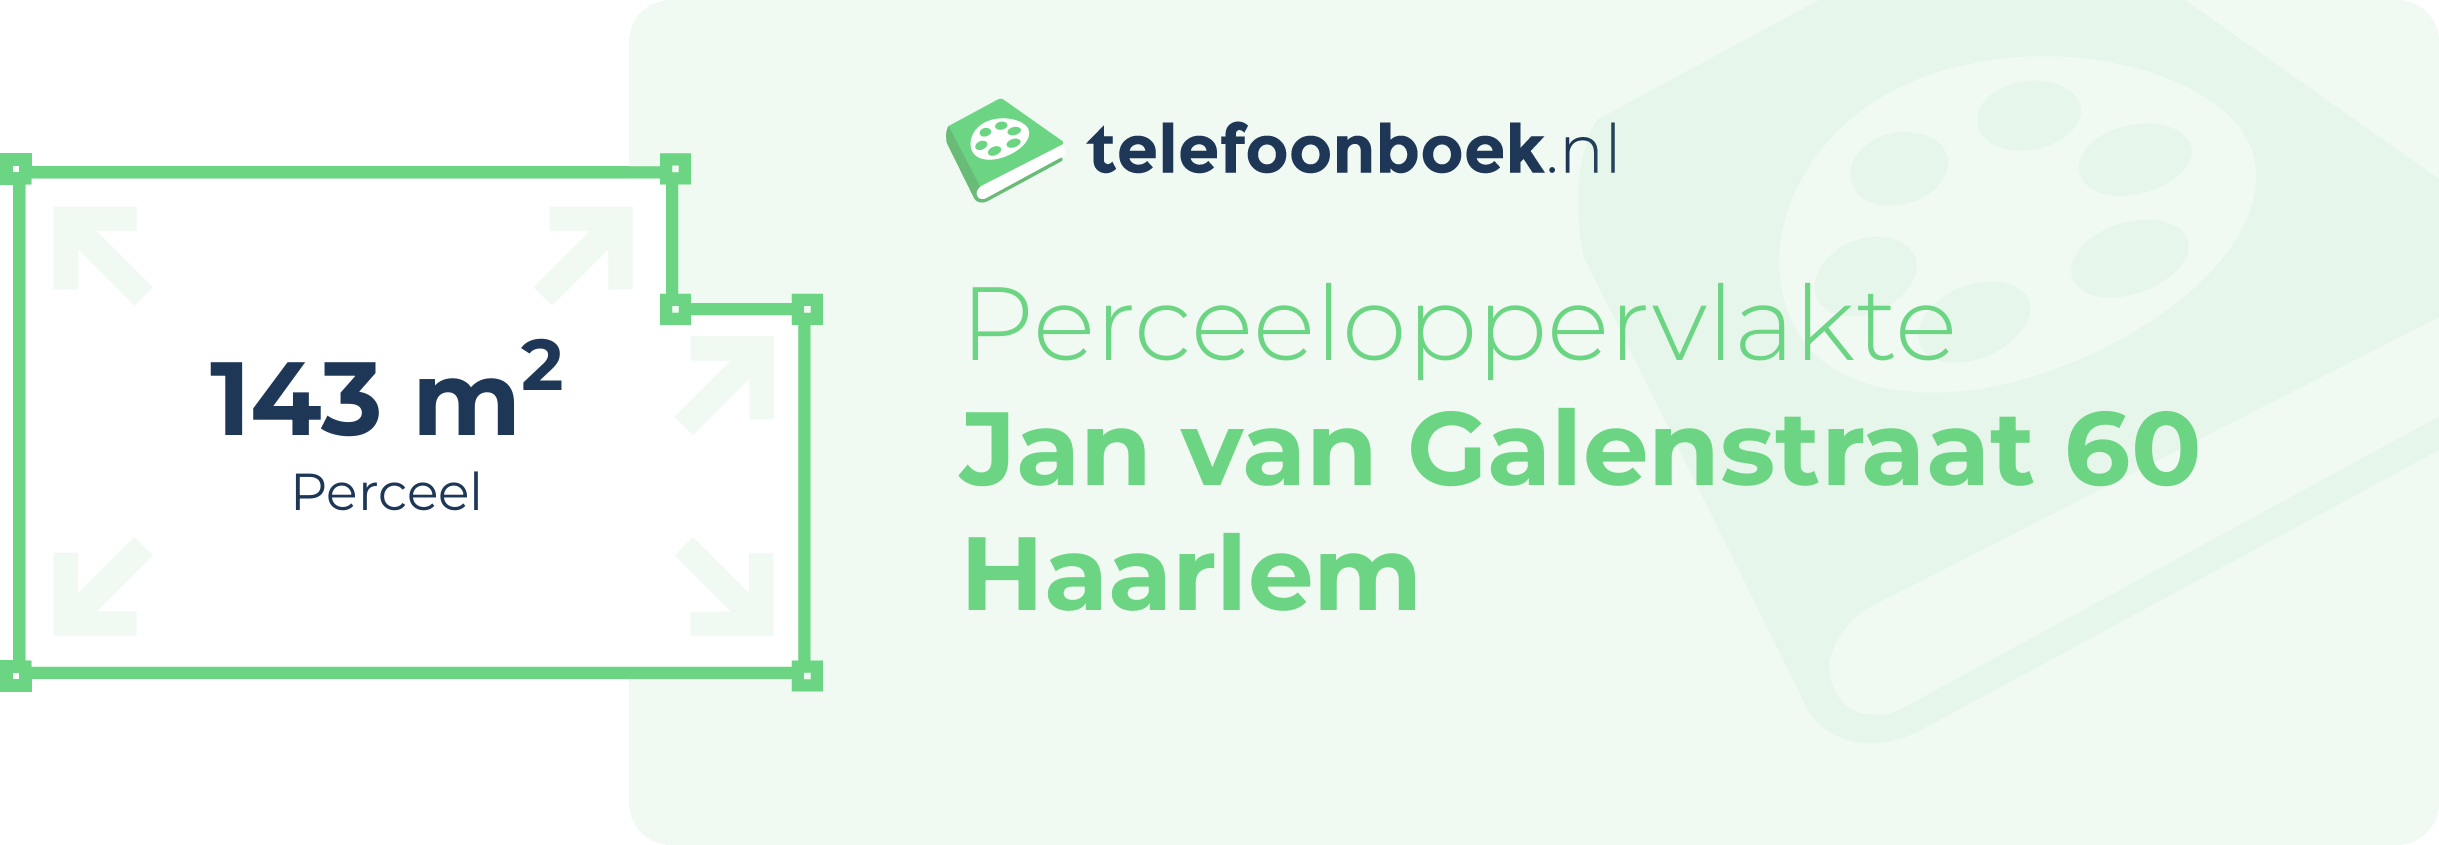 Perceeloppervlakte Jan Van Galenstraat 60 Haarlem